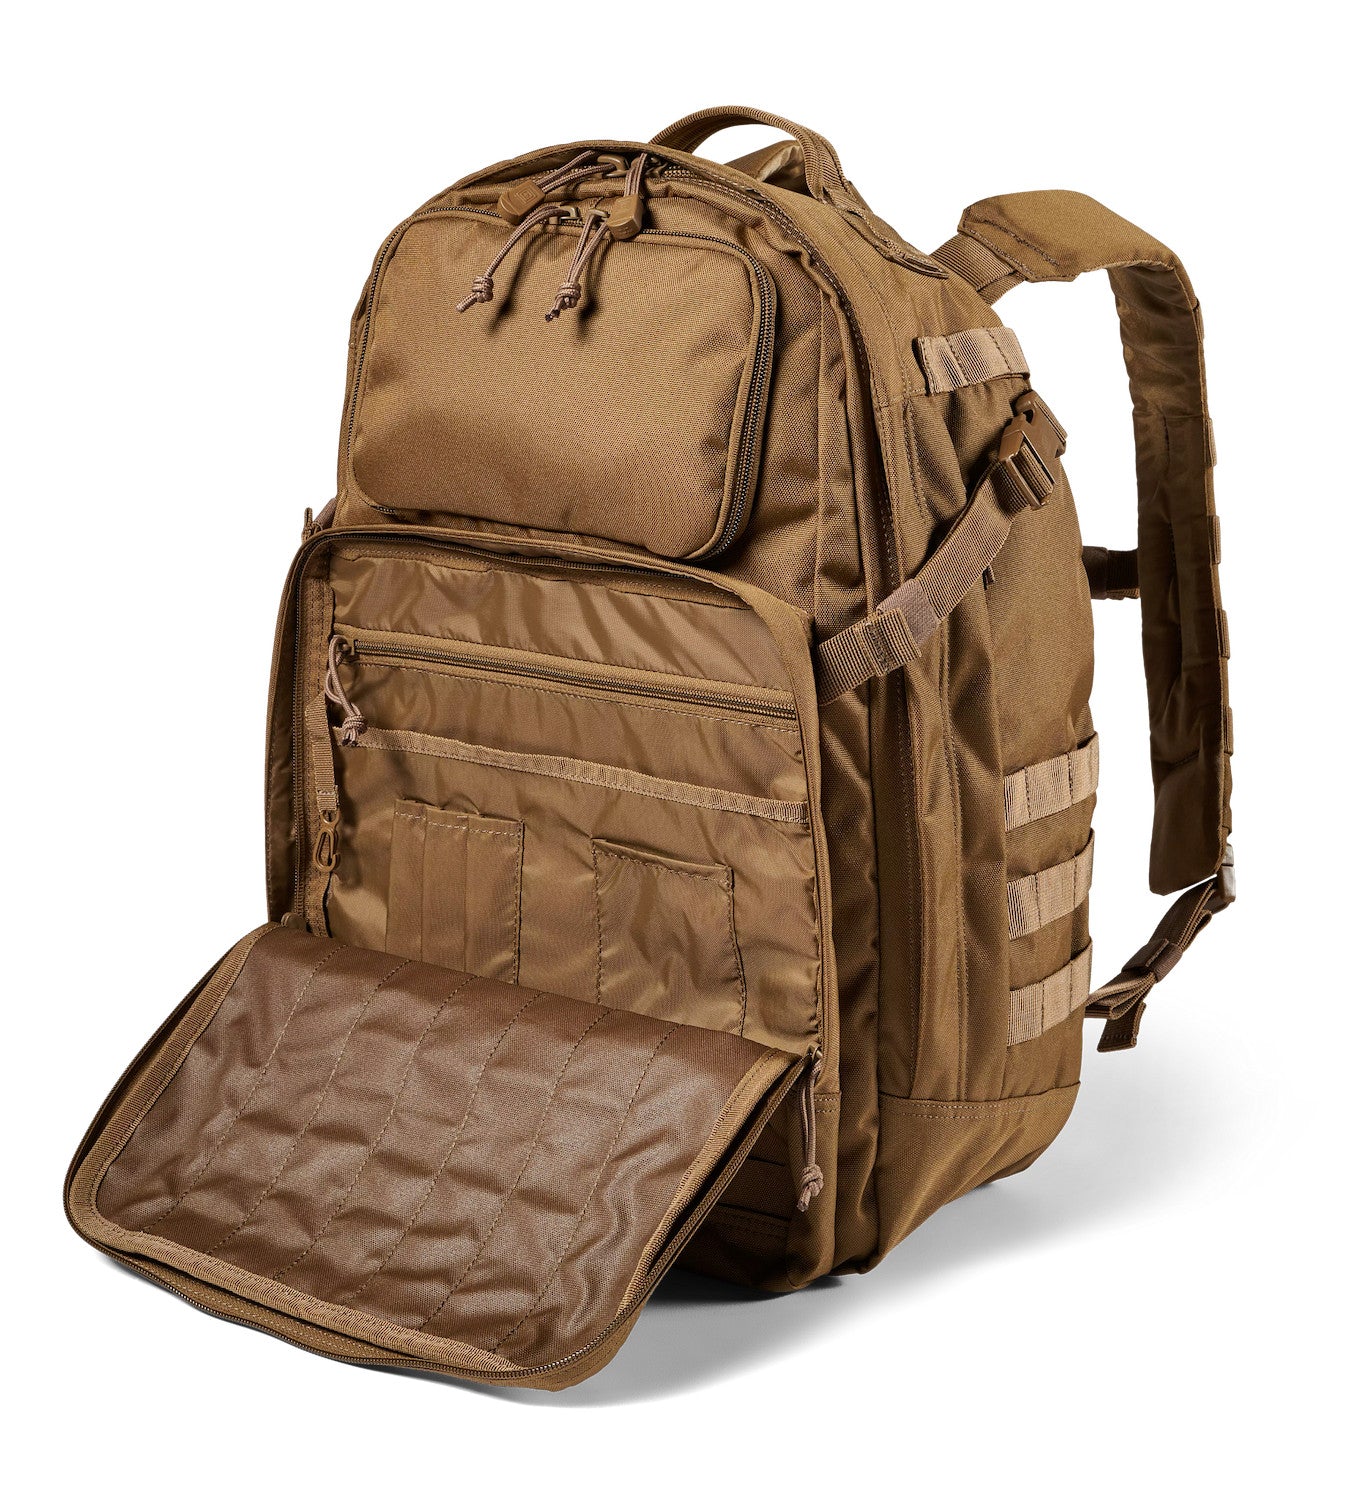 56638 - Fast-Tac 24 Backpack 37L